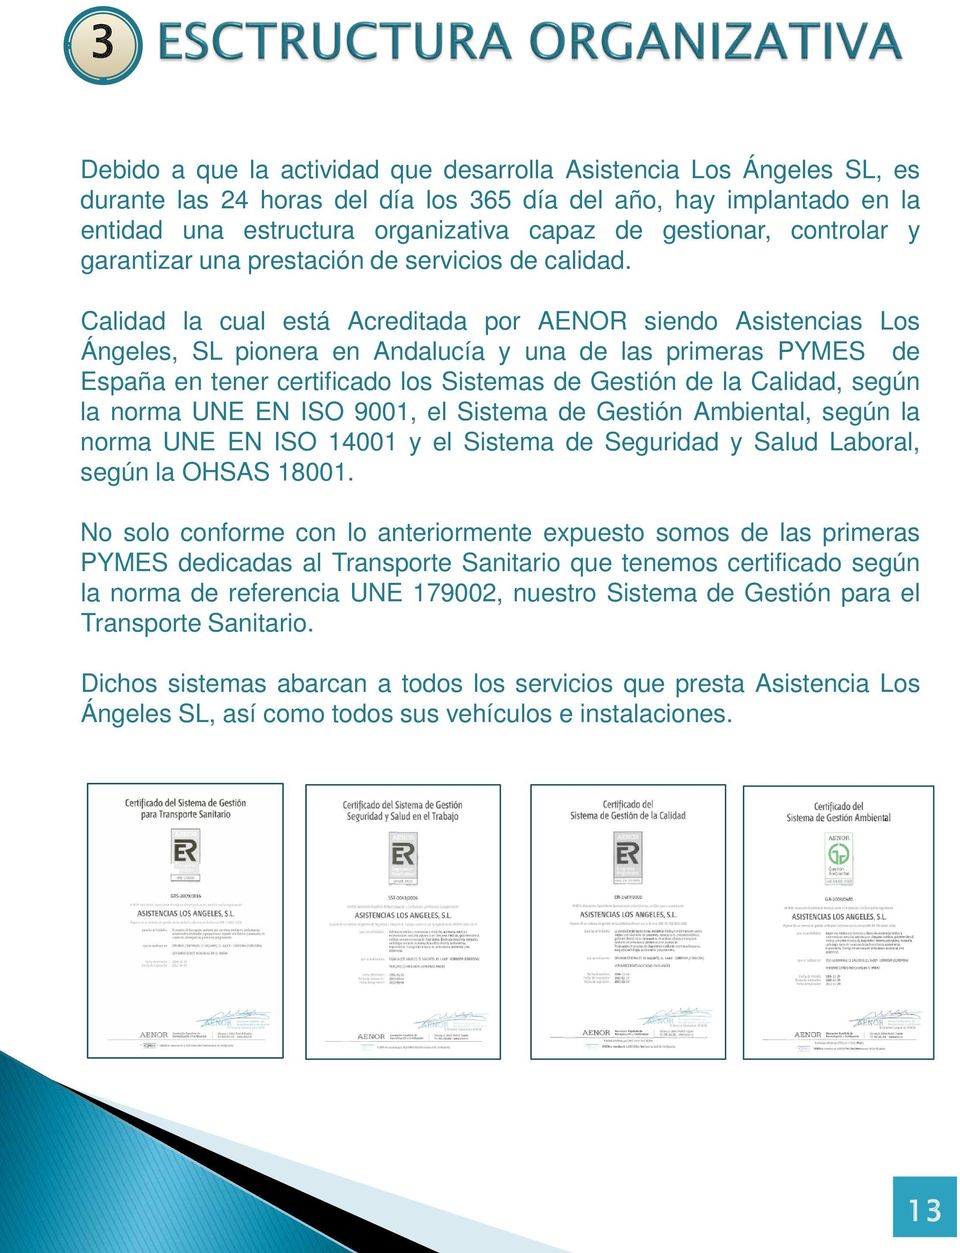 Calidad la cual está Acreditada por AENOR siendo Asistencias Los Ángeles, SL pionera en Andalucía y una de las primeras PYMES de España en tener certificado los Sistemas de Gestión de la Calidad,